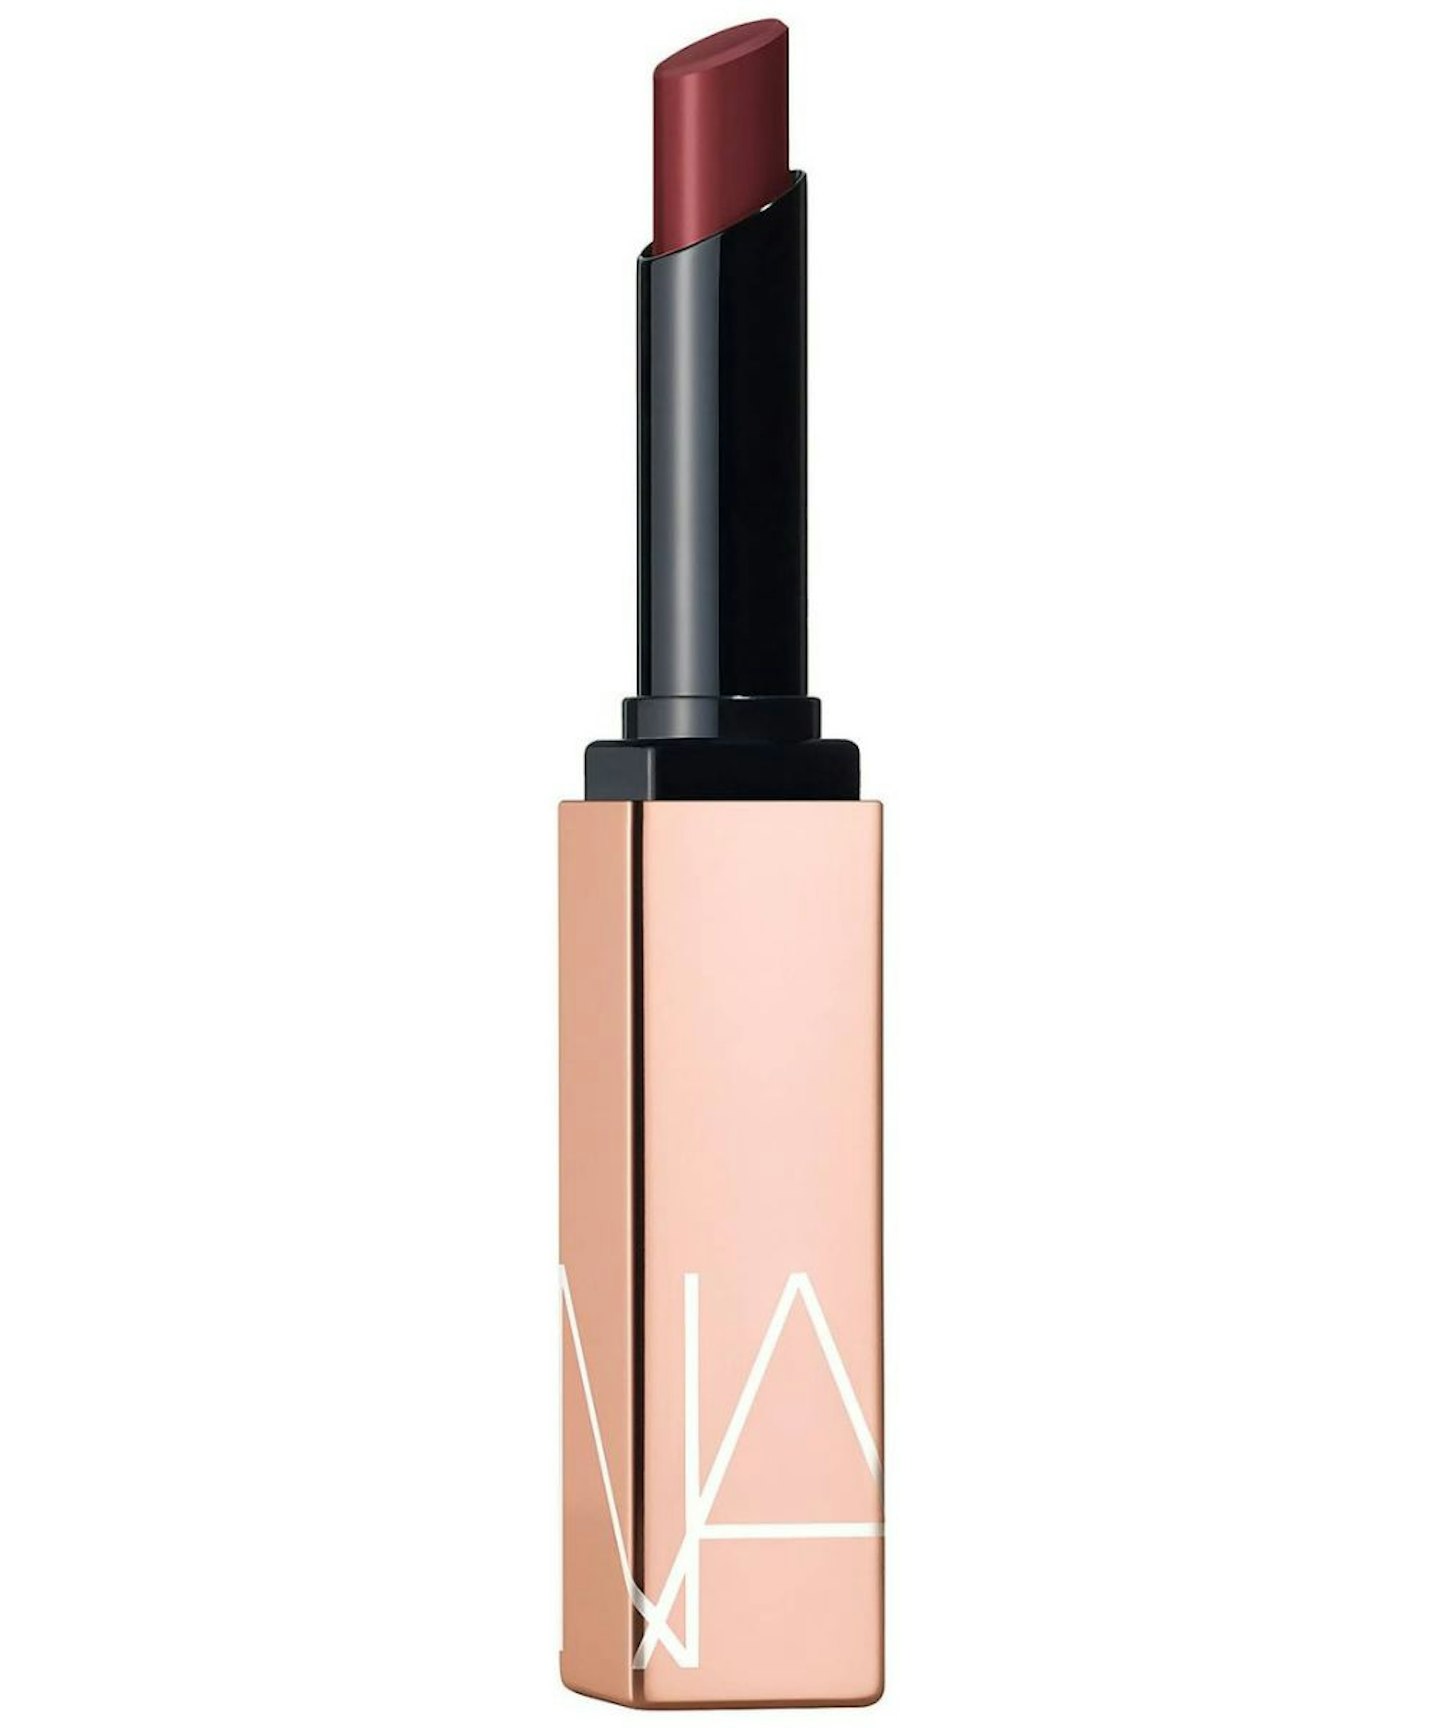 NARS Afterglow Lipstick